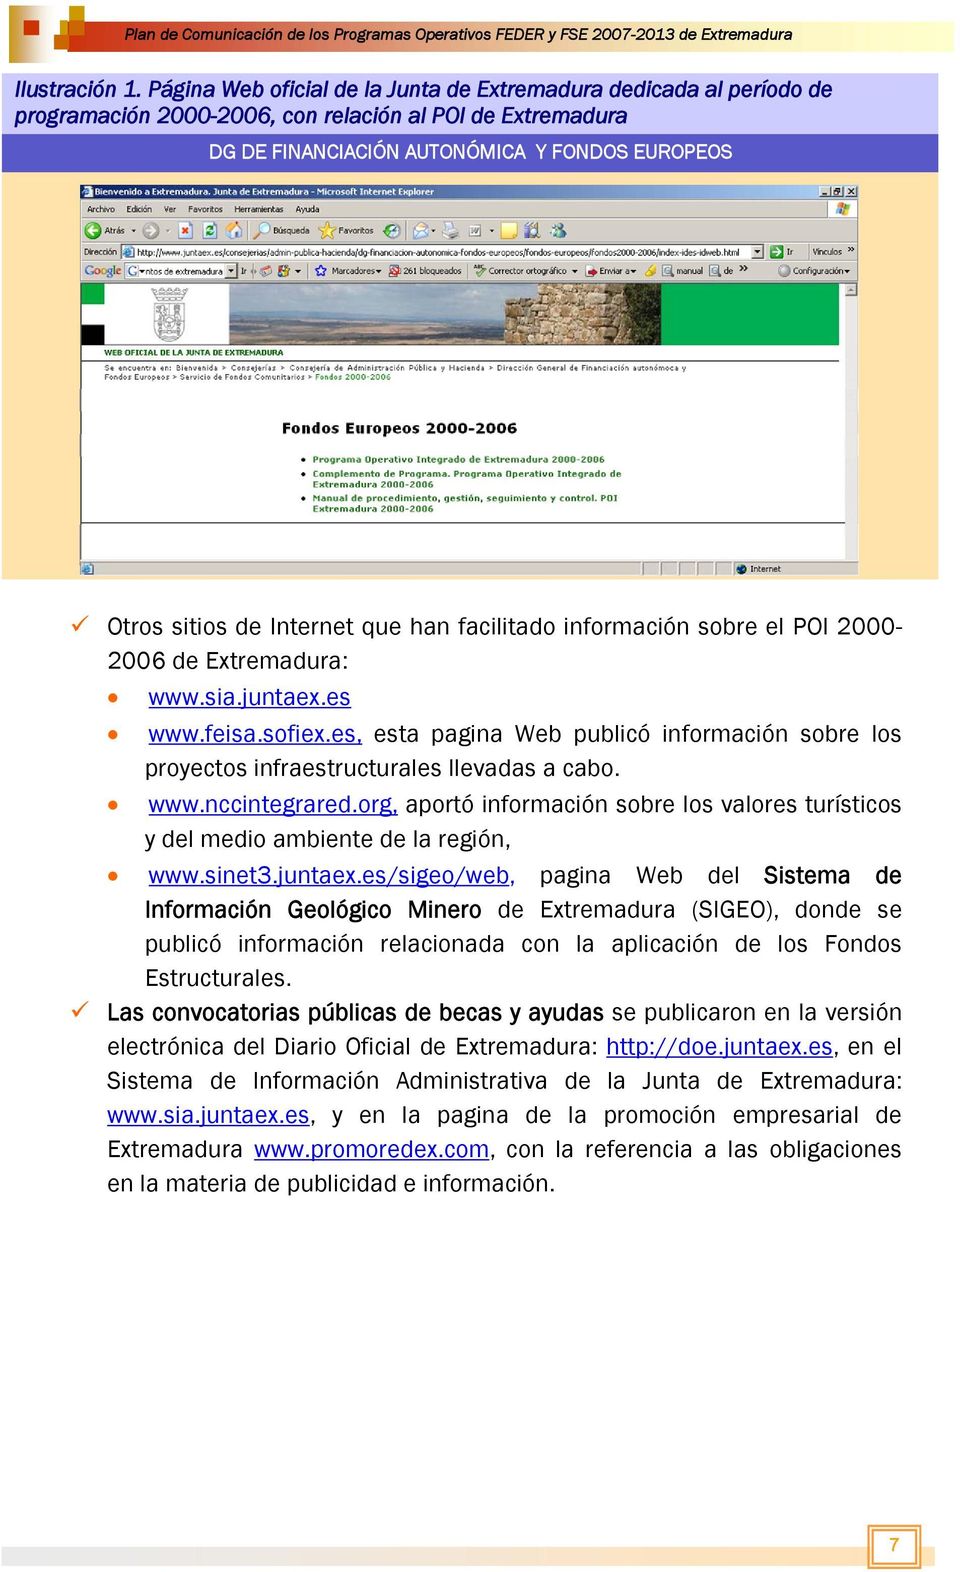 Internet que han facilitado información sobre el POI 2000-2006 de Extremadura: www.sia.juntaex.es www.feisa.sofiex.